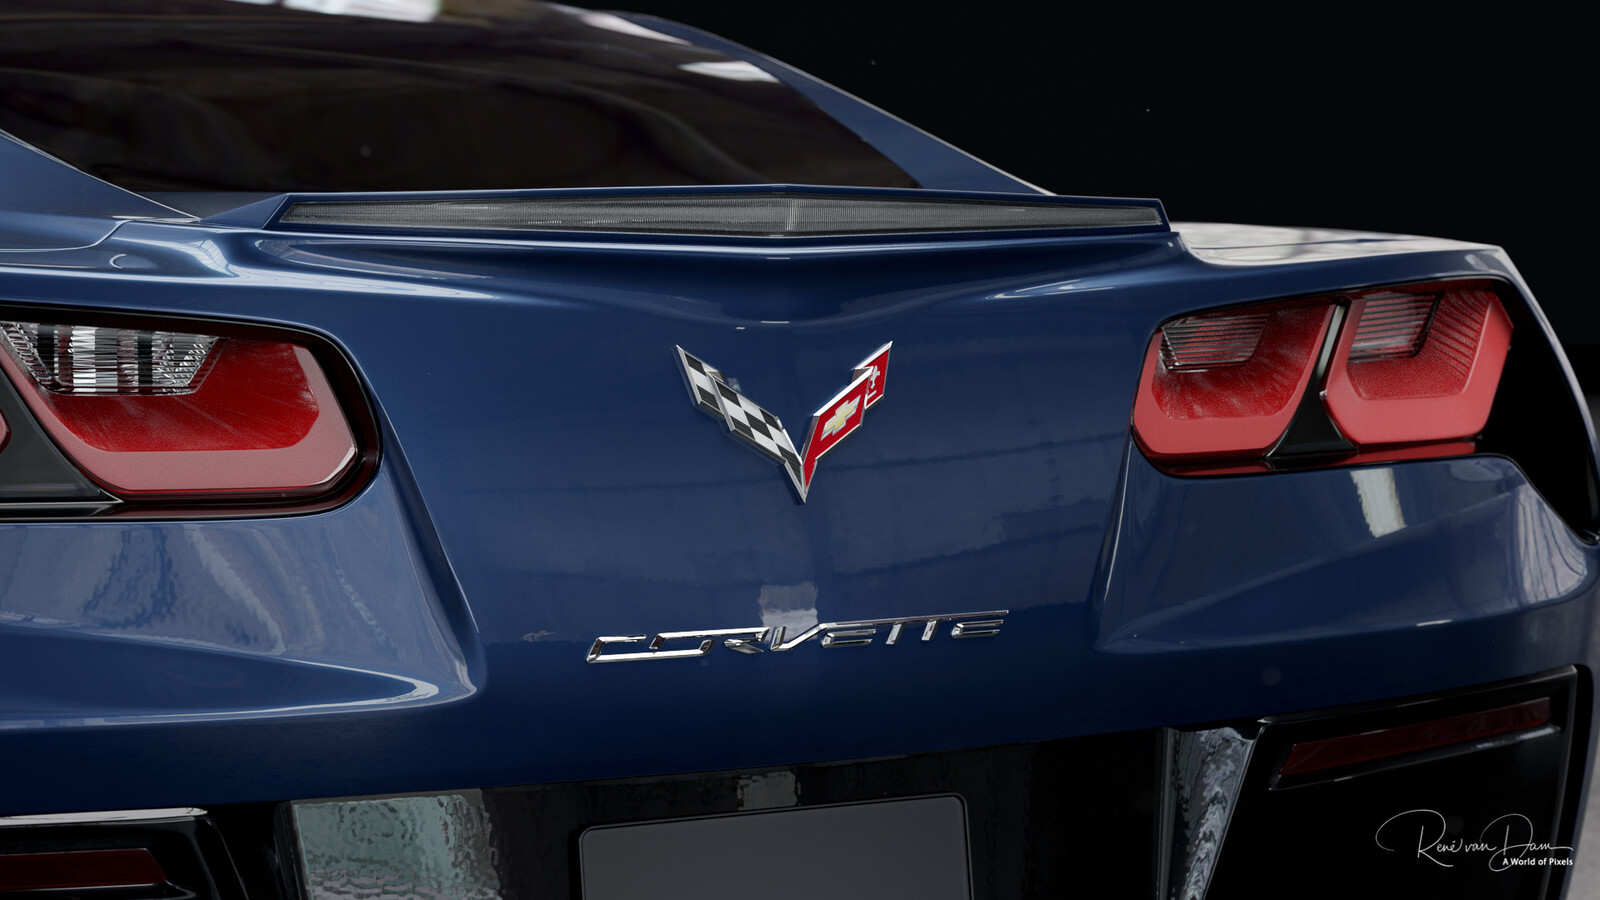 Chevrolet Corvette Stingray created in Blender